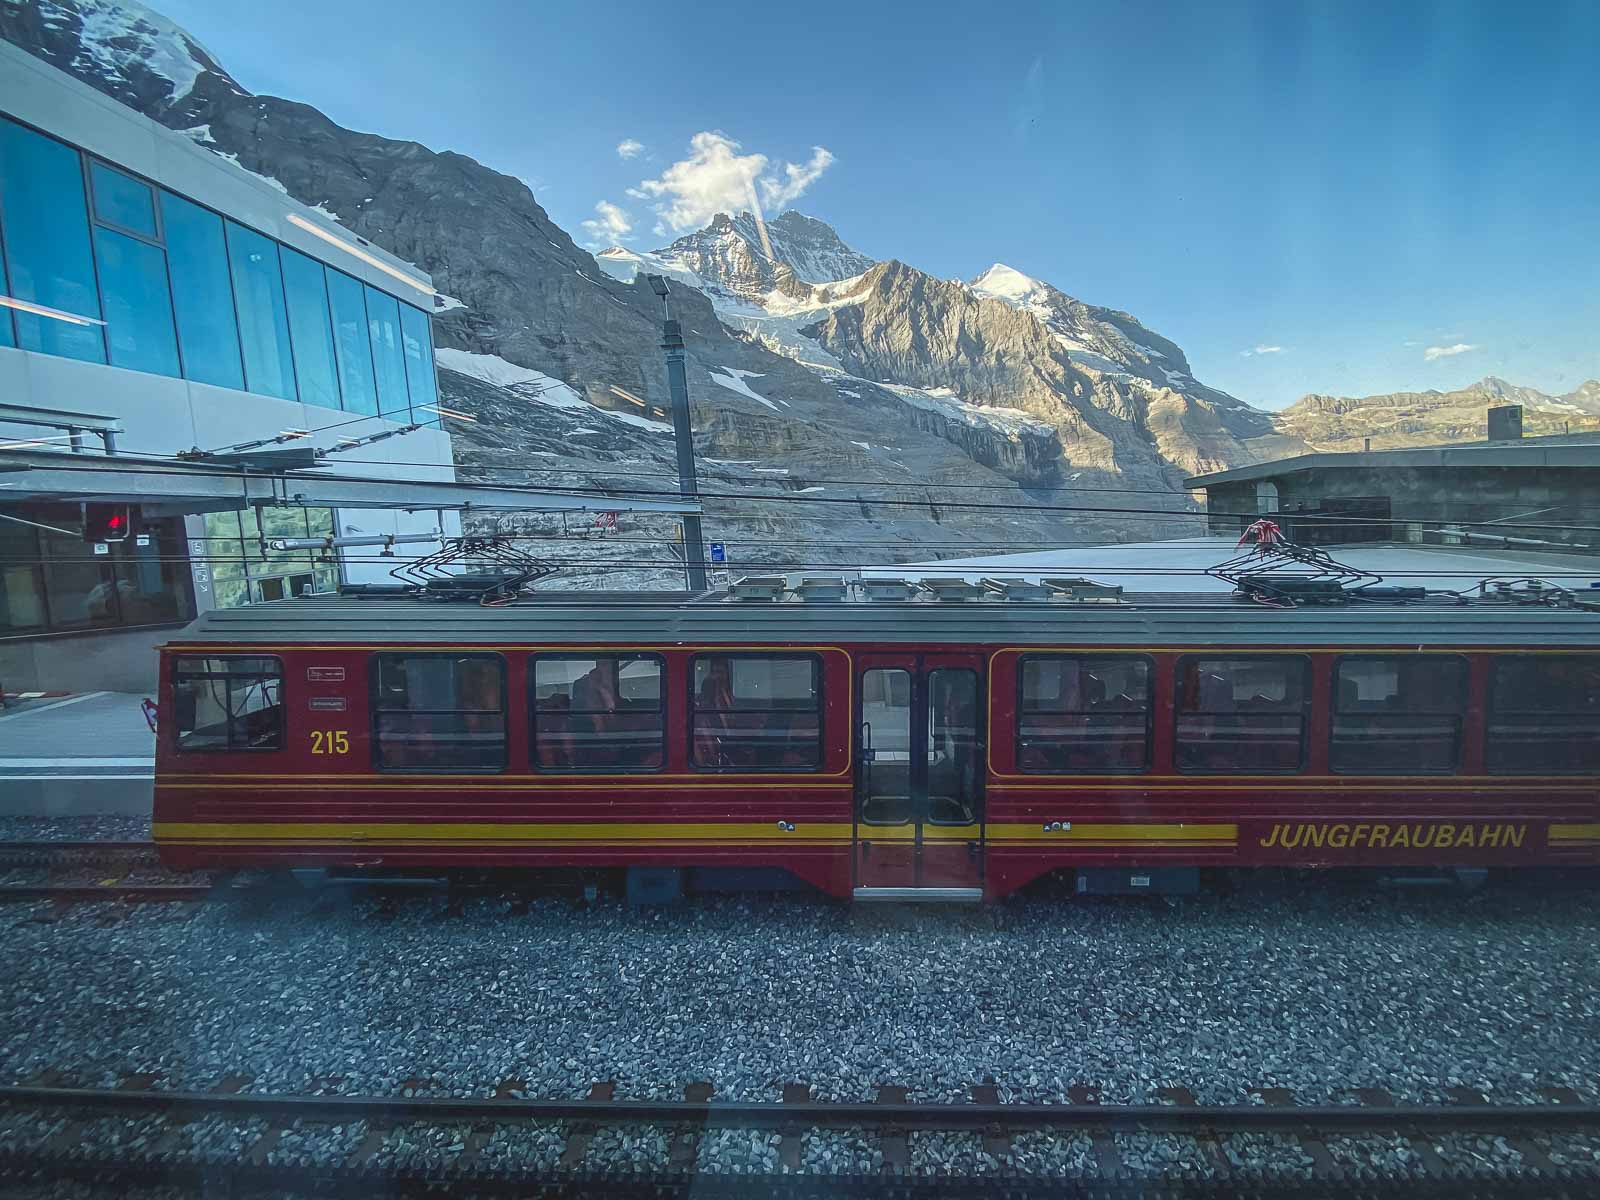 Jungfrau Railway About Jungfraujoch top of Europe